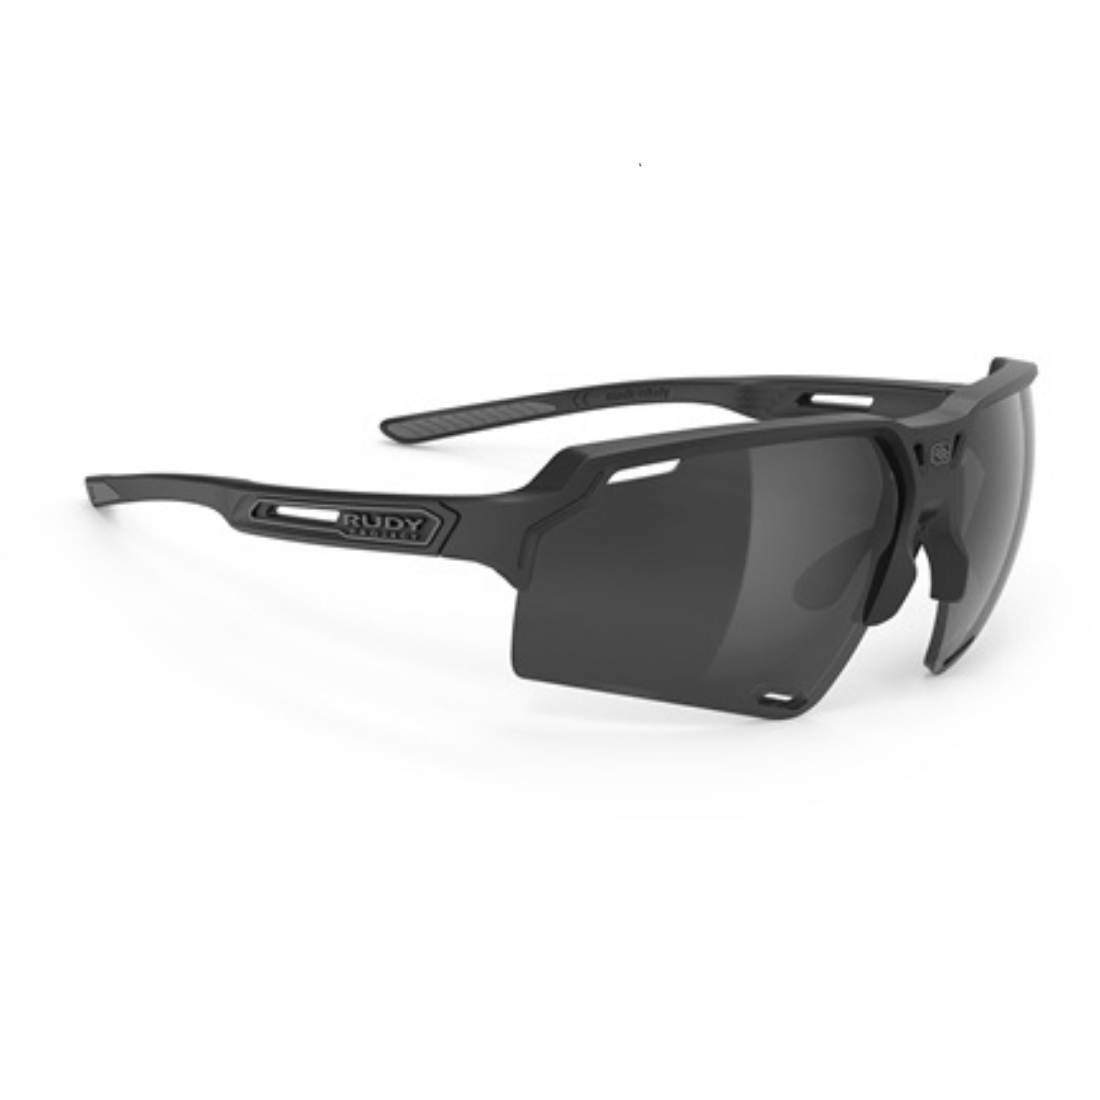 Deltabeat Eyewear in Black Matte - Smoke Black Lens